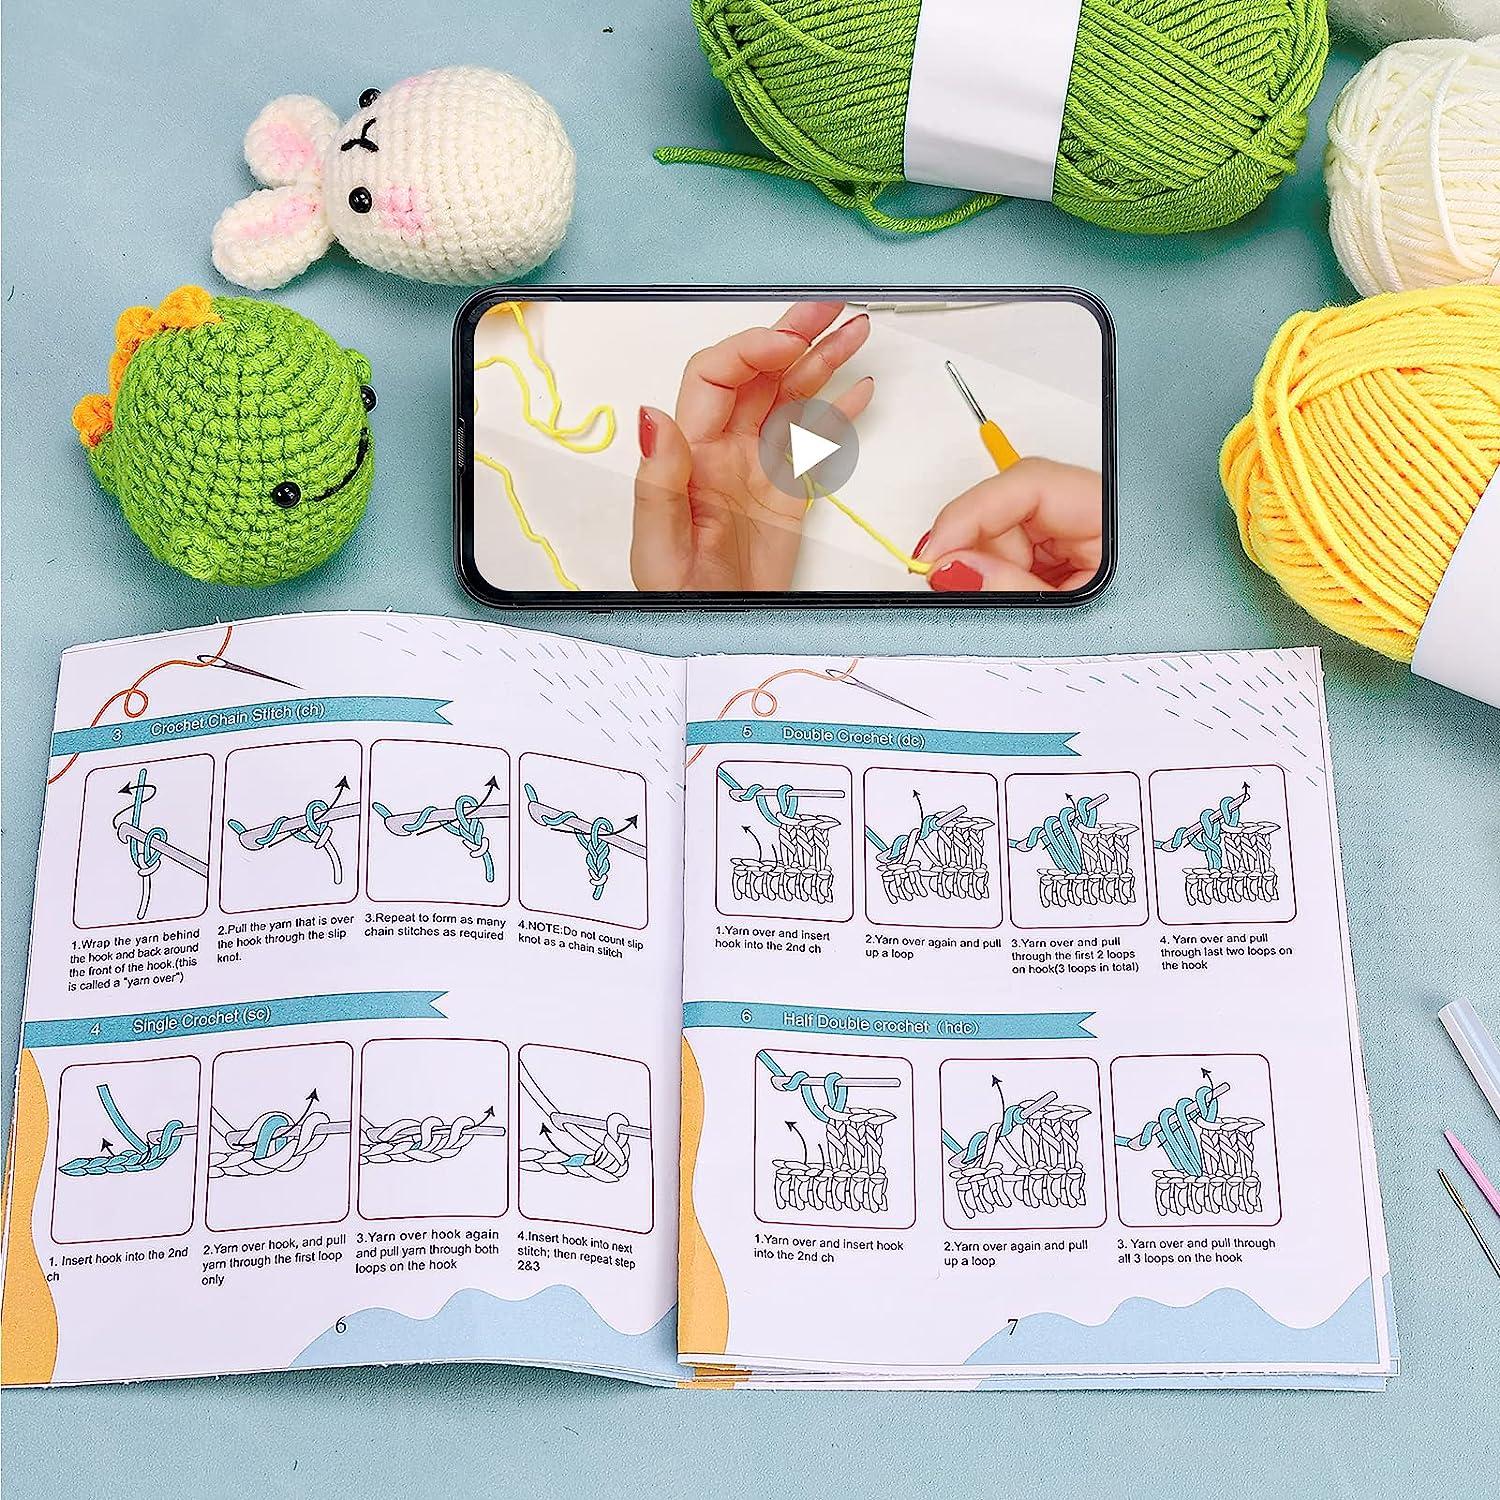 Blue Dinosaur Crochet Kit For Beginners, Beginner Crochet Starter Kit With  Step-by-step Video Tutorials, Learn To Crochet Kits For Adults, Diy  Knitting Supplies - Crochet Dinosaur Pattern Manual And Beginner's Basic  Crochet